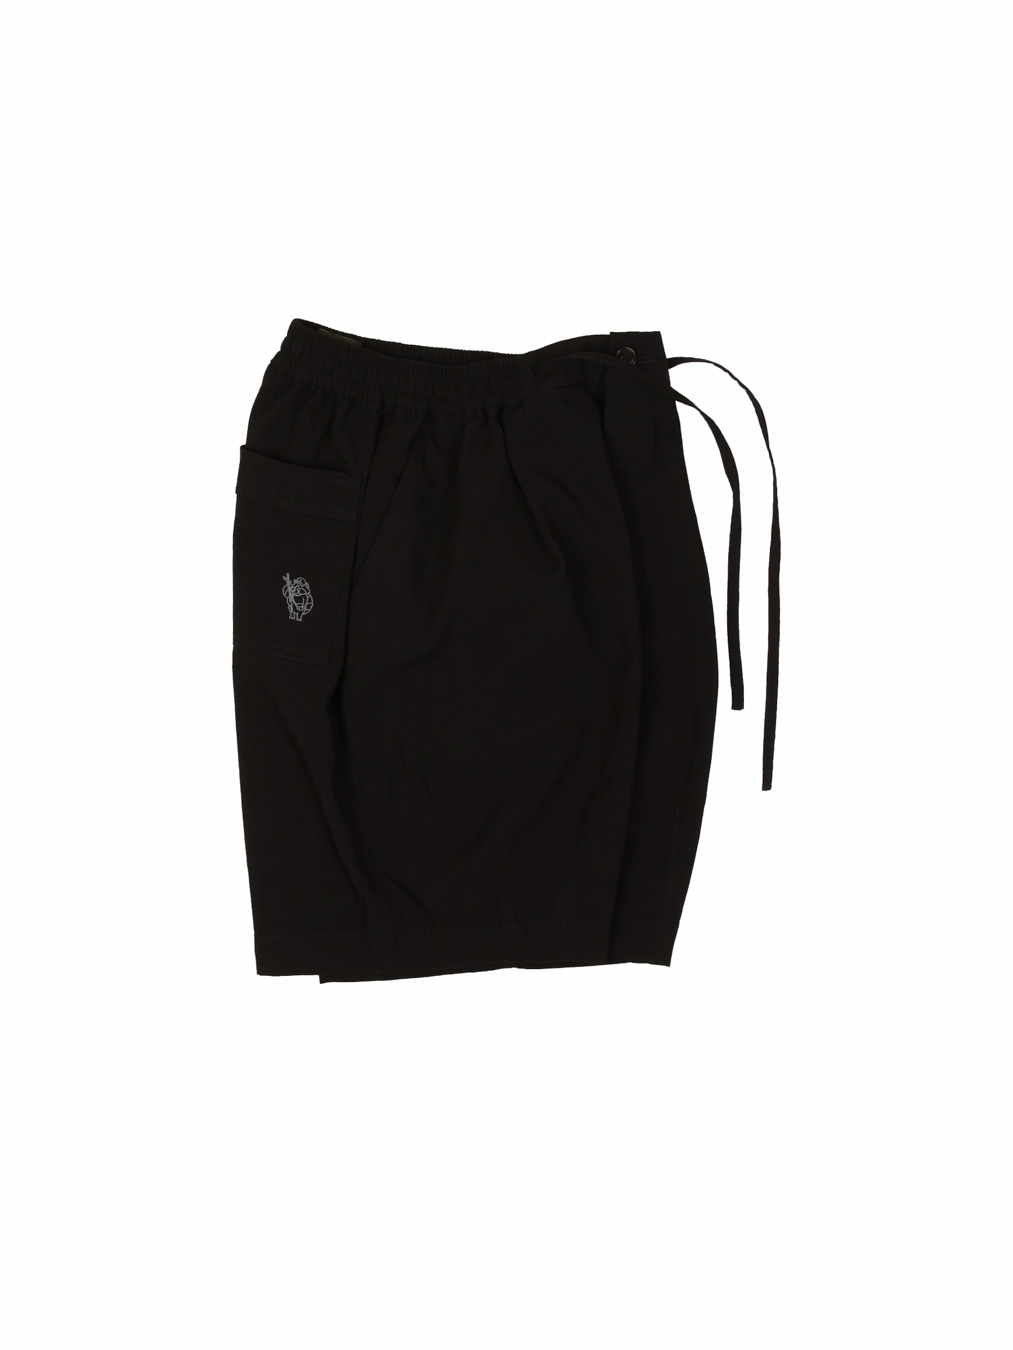 Rayon Balloon Shorts (Black)